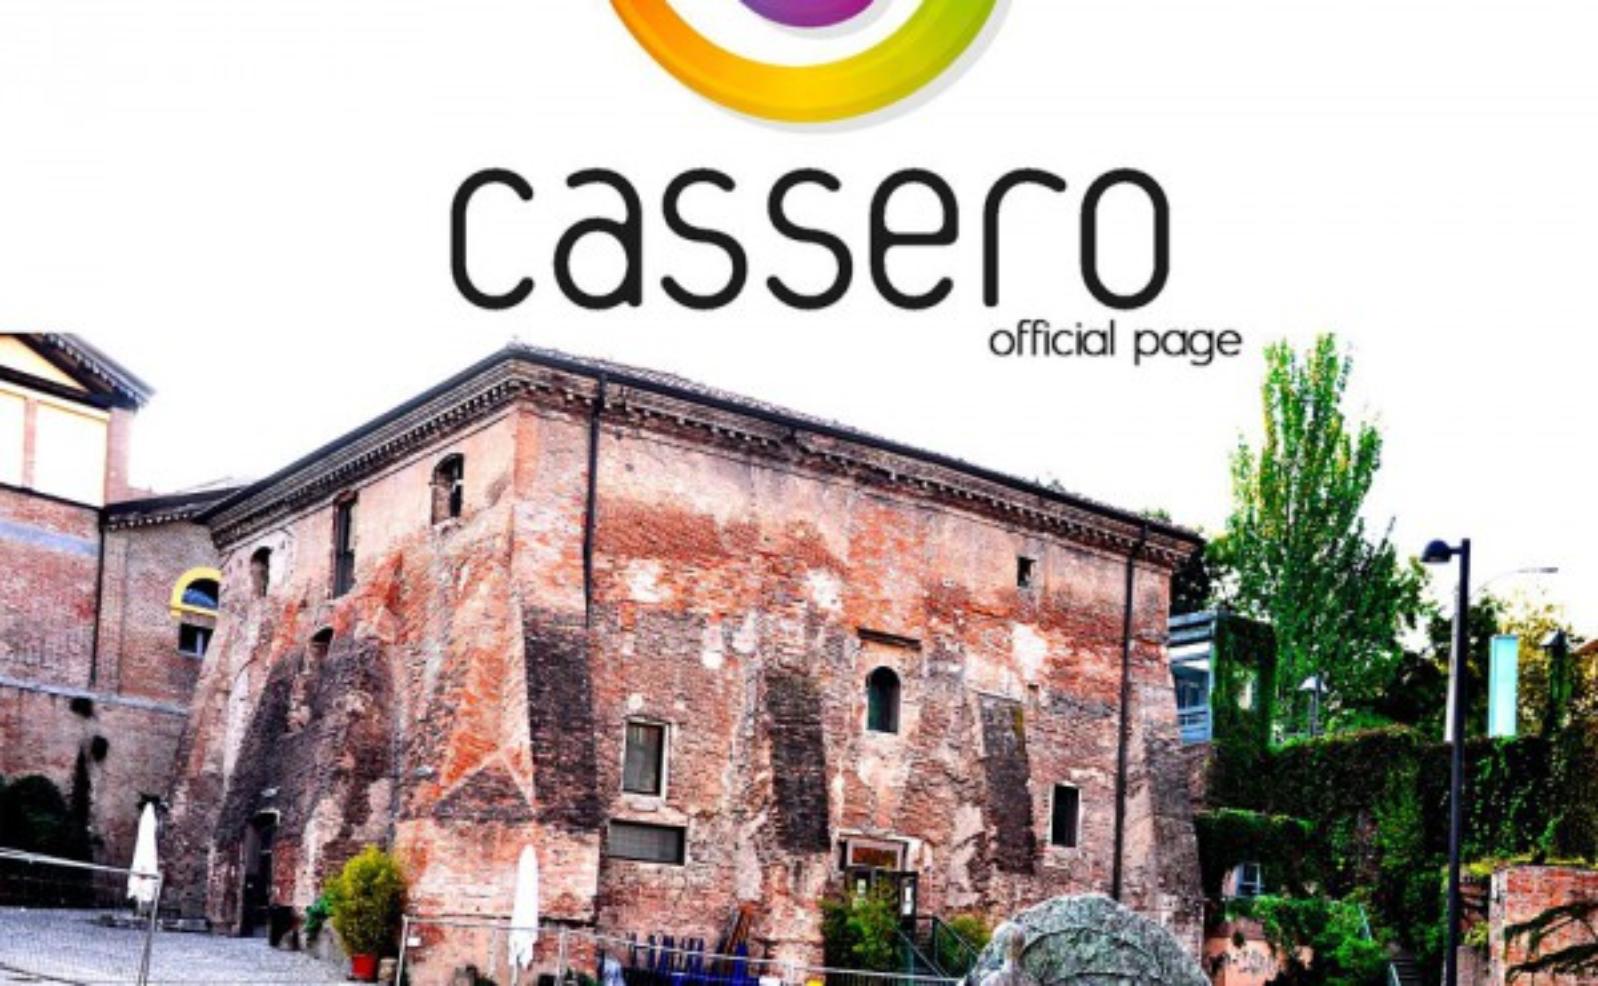 Cassero LGBTI+ center